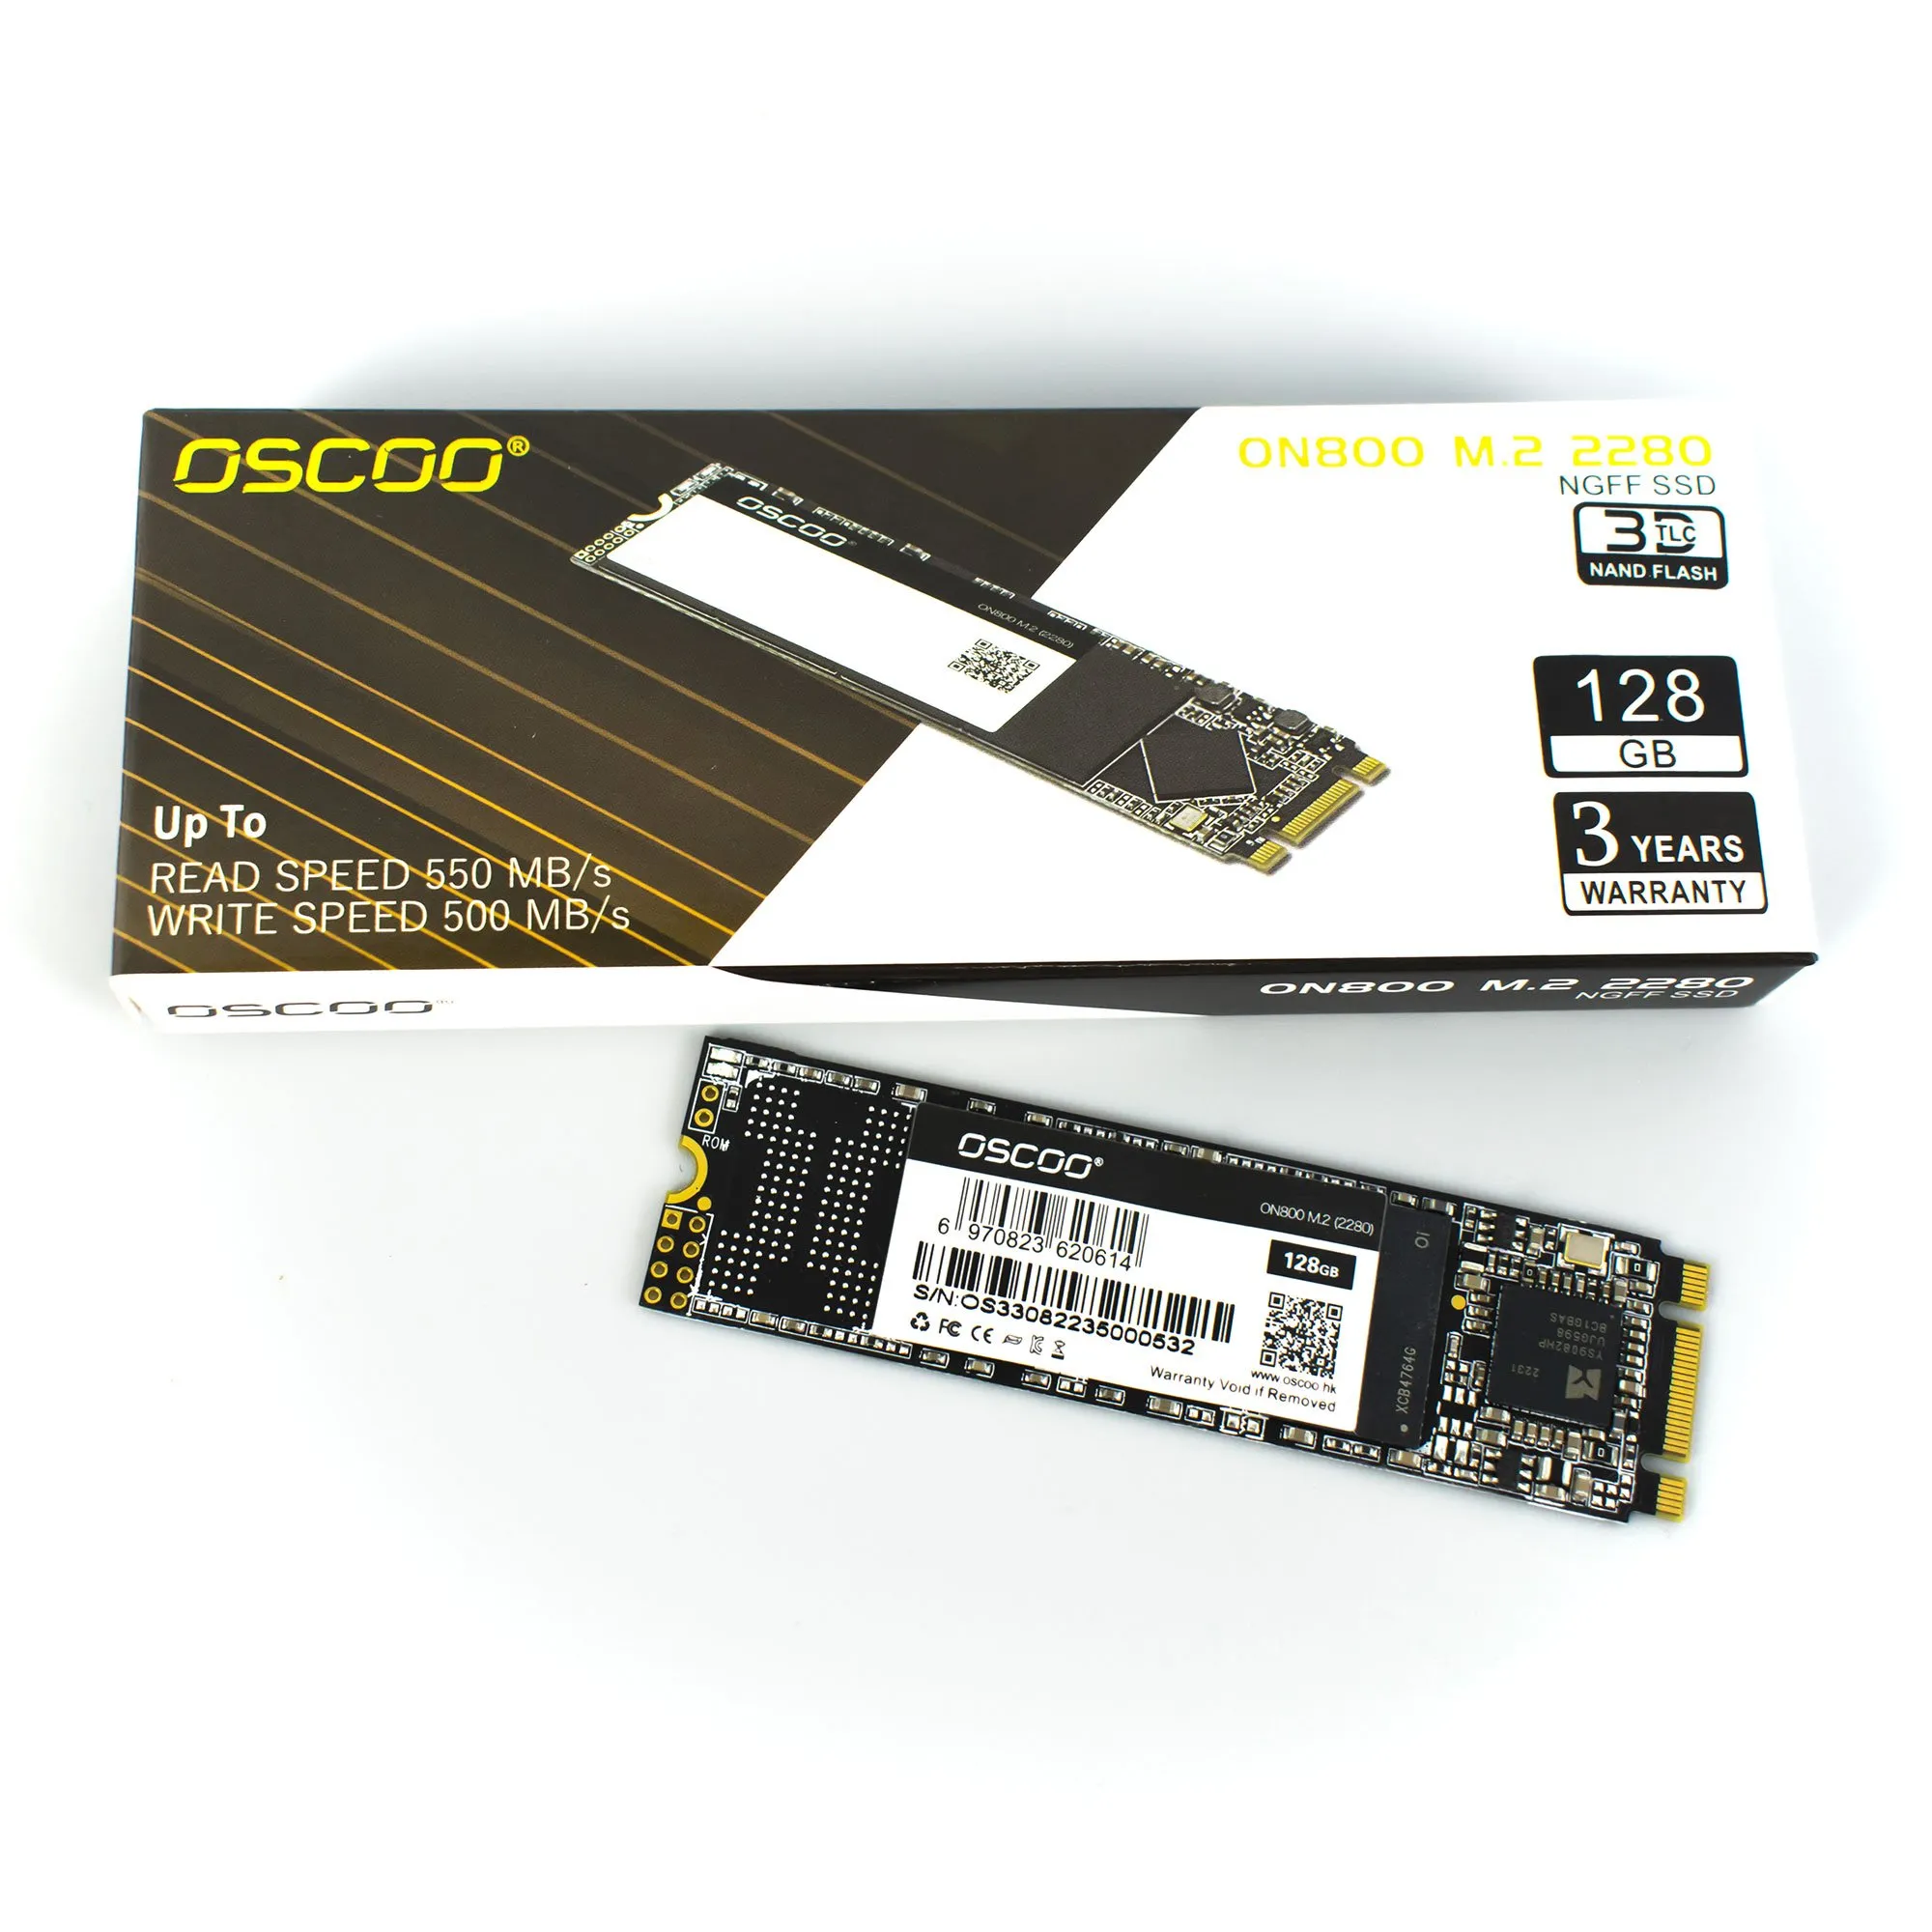 SSD 128GB ON800 Oscoo - SATA 3, M.2 2280, Leitura até 550MB/s e Gravação até 500MB/s